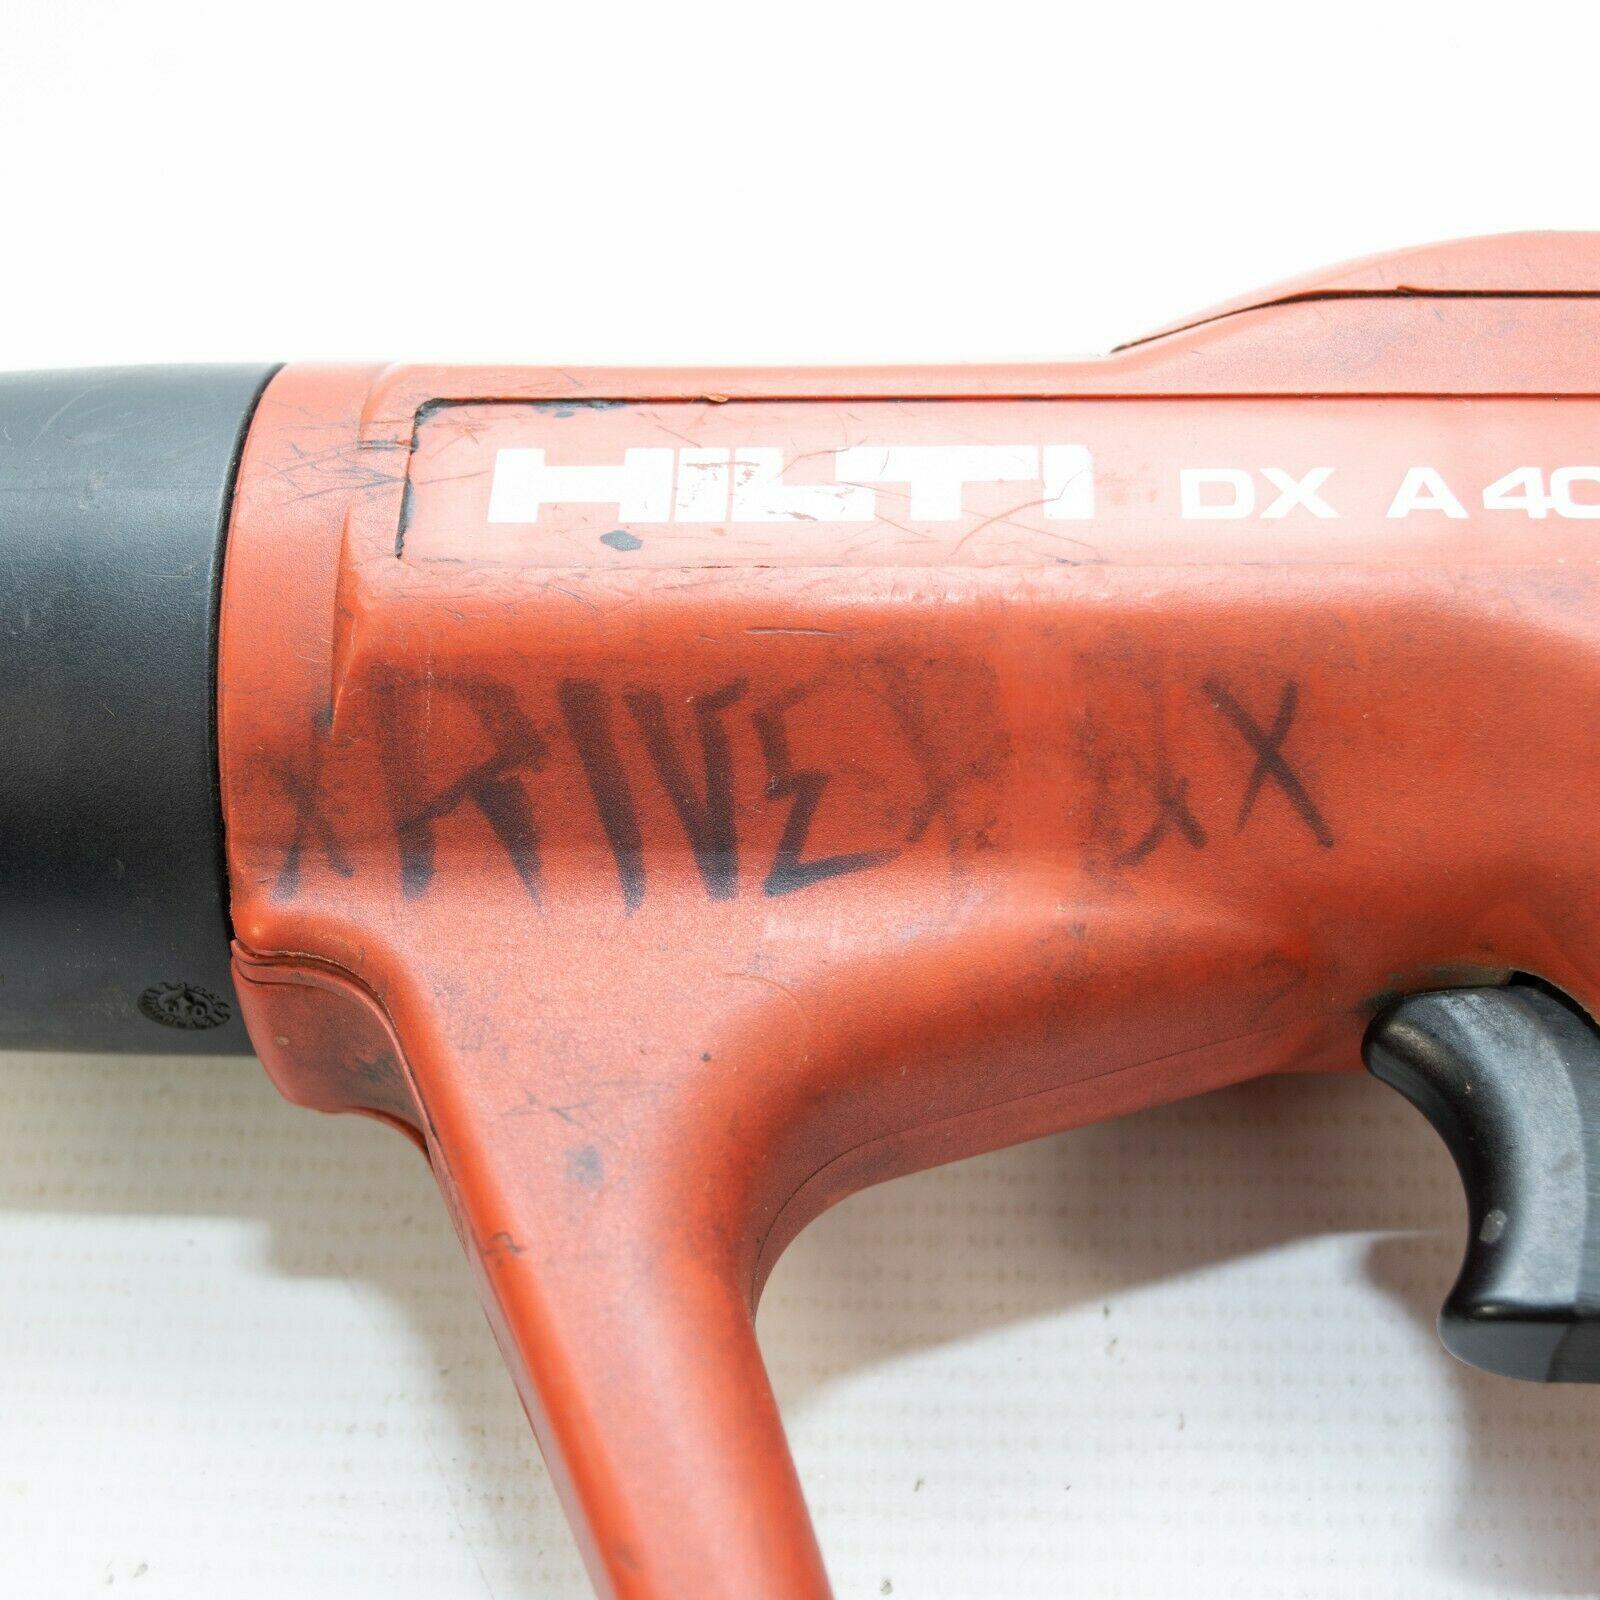 Hilti DX A40 Pistola de Hormigón Accionada por Polvo con X-AM32 y maletín - ipawnishop.com